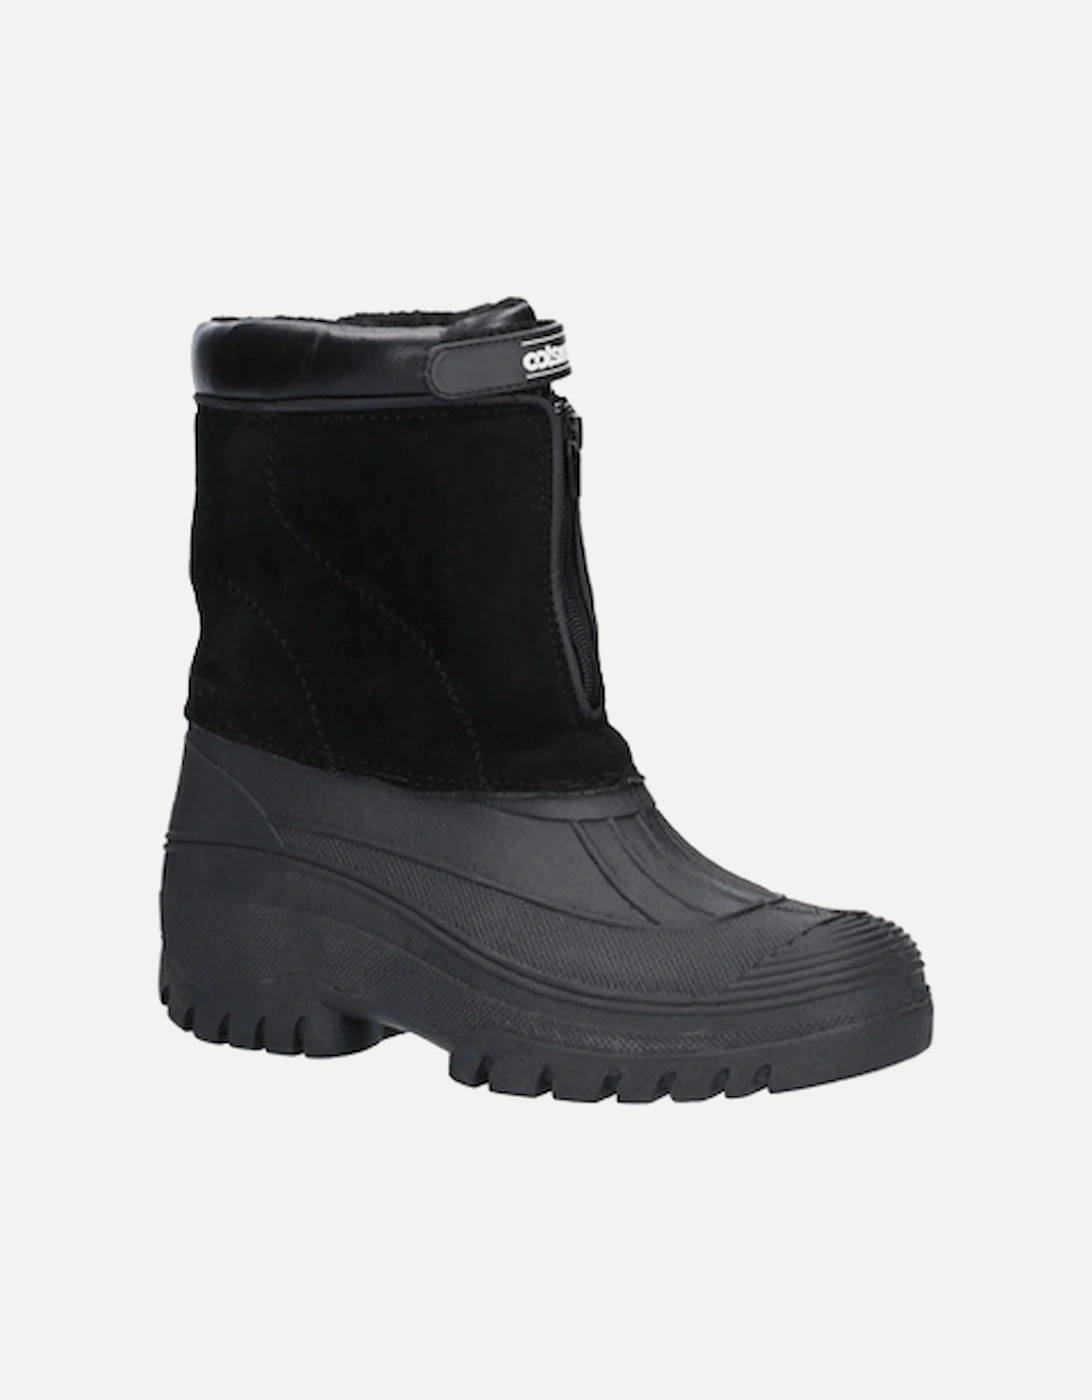 Men's Venture Waterproof Winter Boot Black, 5 of 4